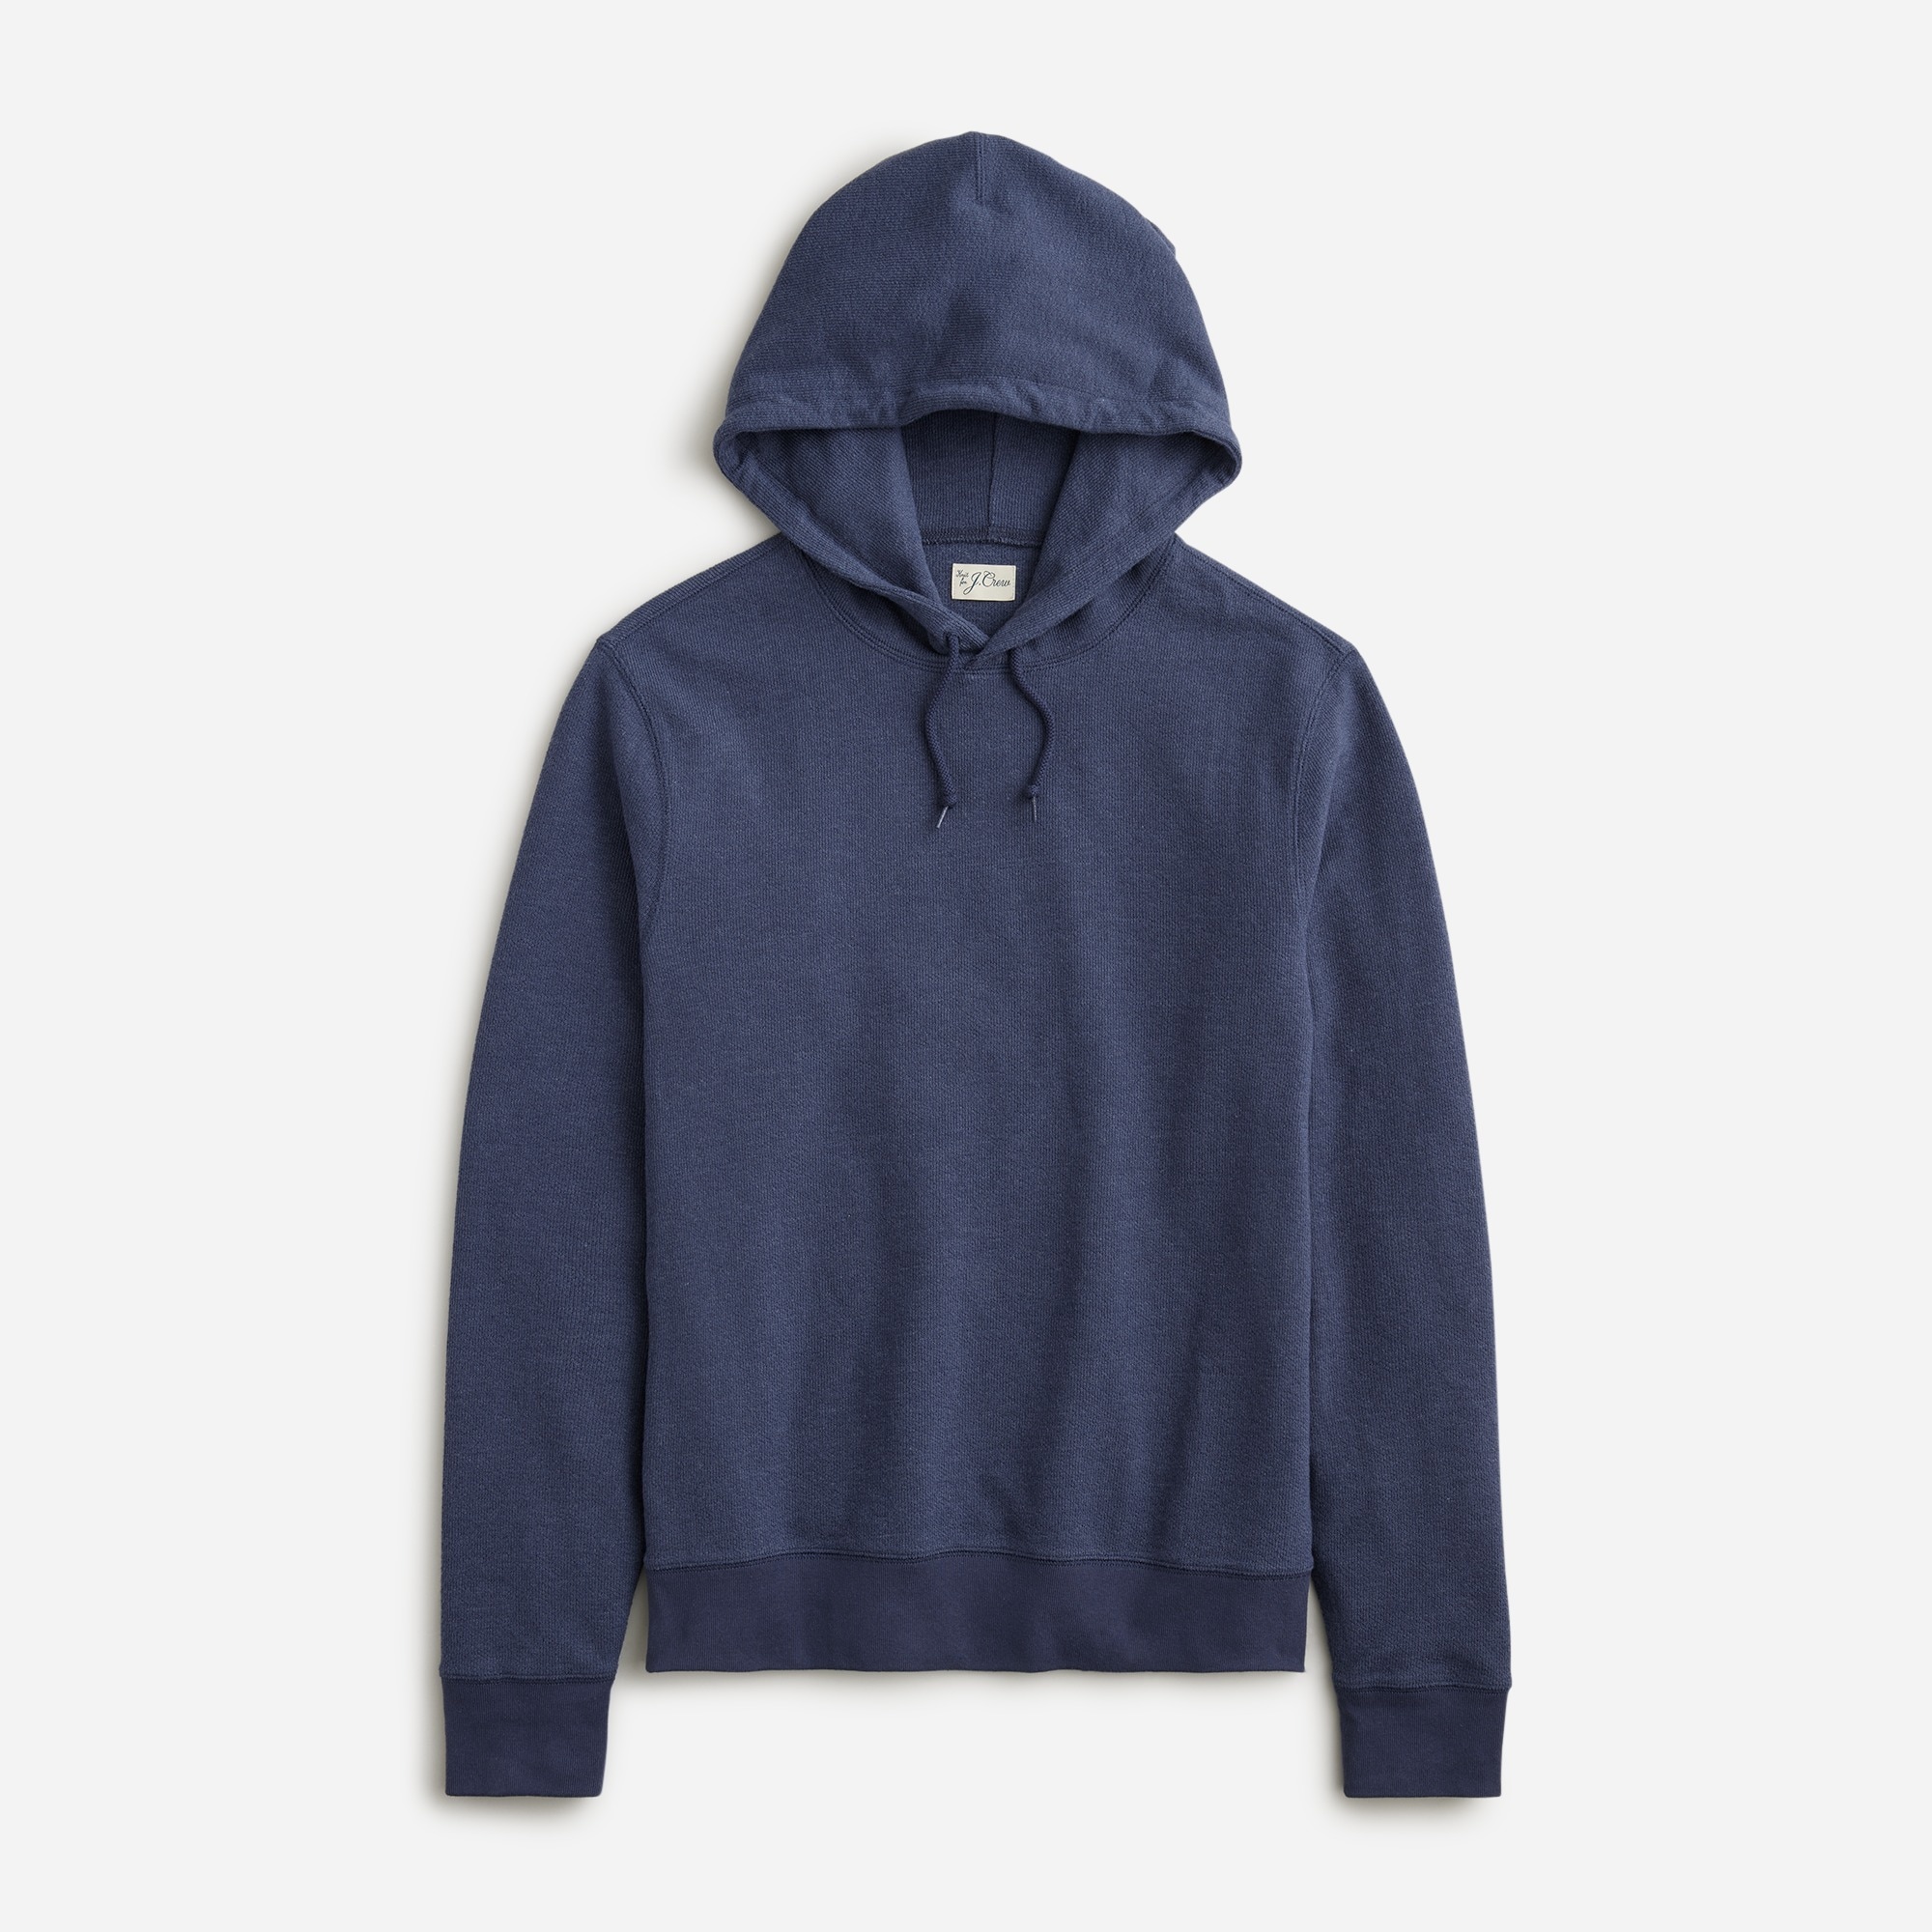 Jcrew Textured sweater-tee hoodie